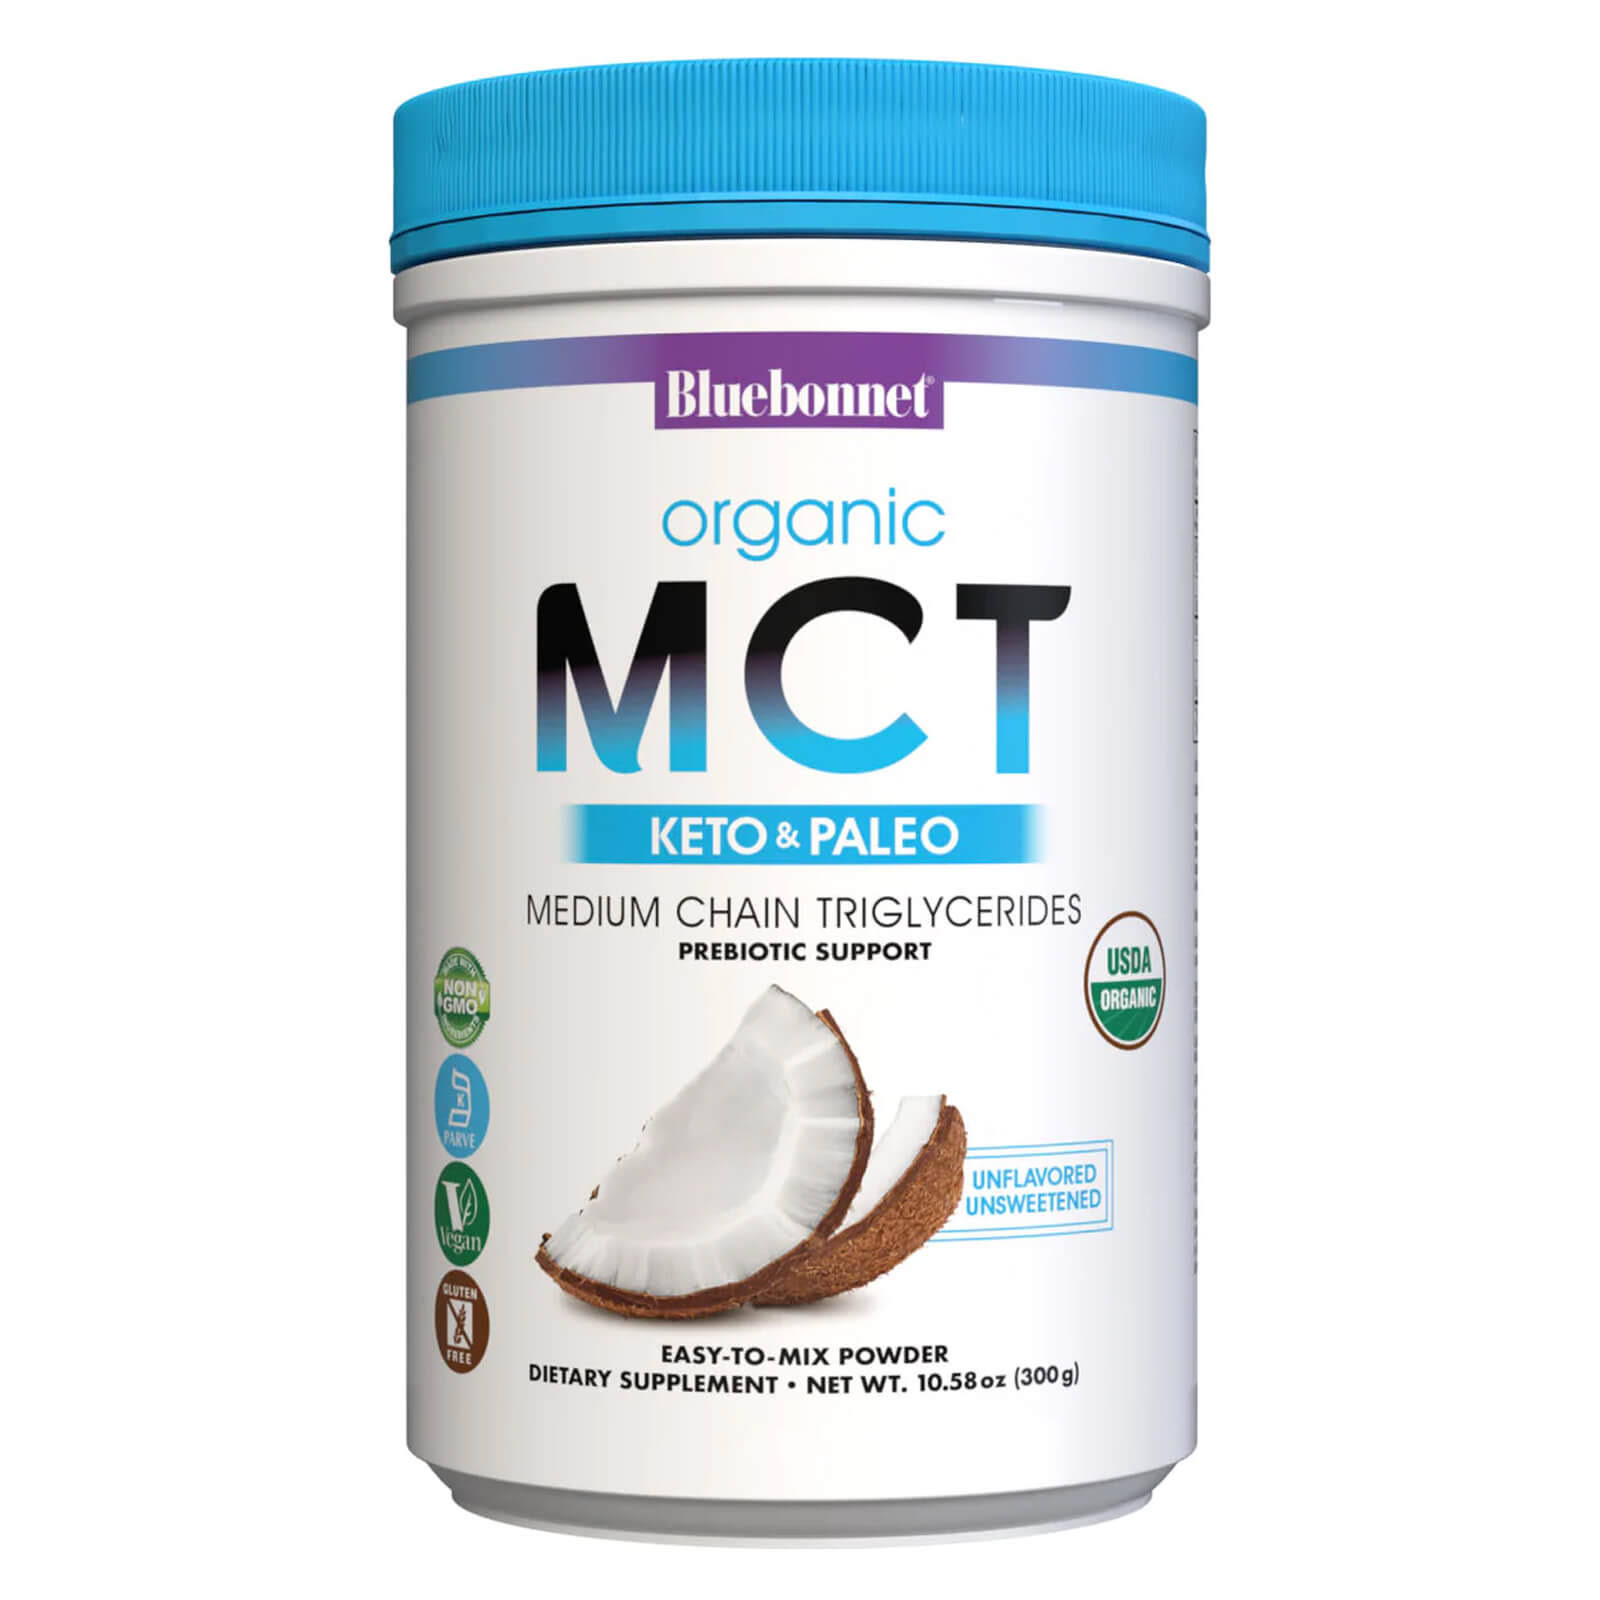 Bluebonnet Organic MCT 10.58 oz (300 g) Powder